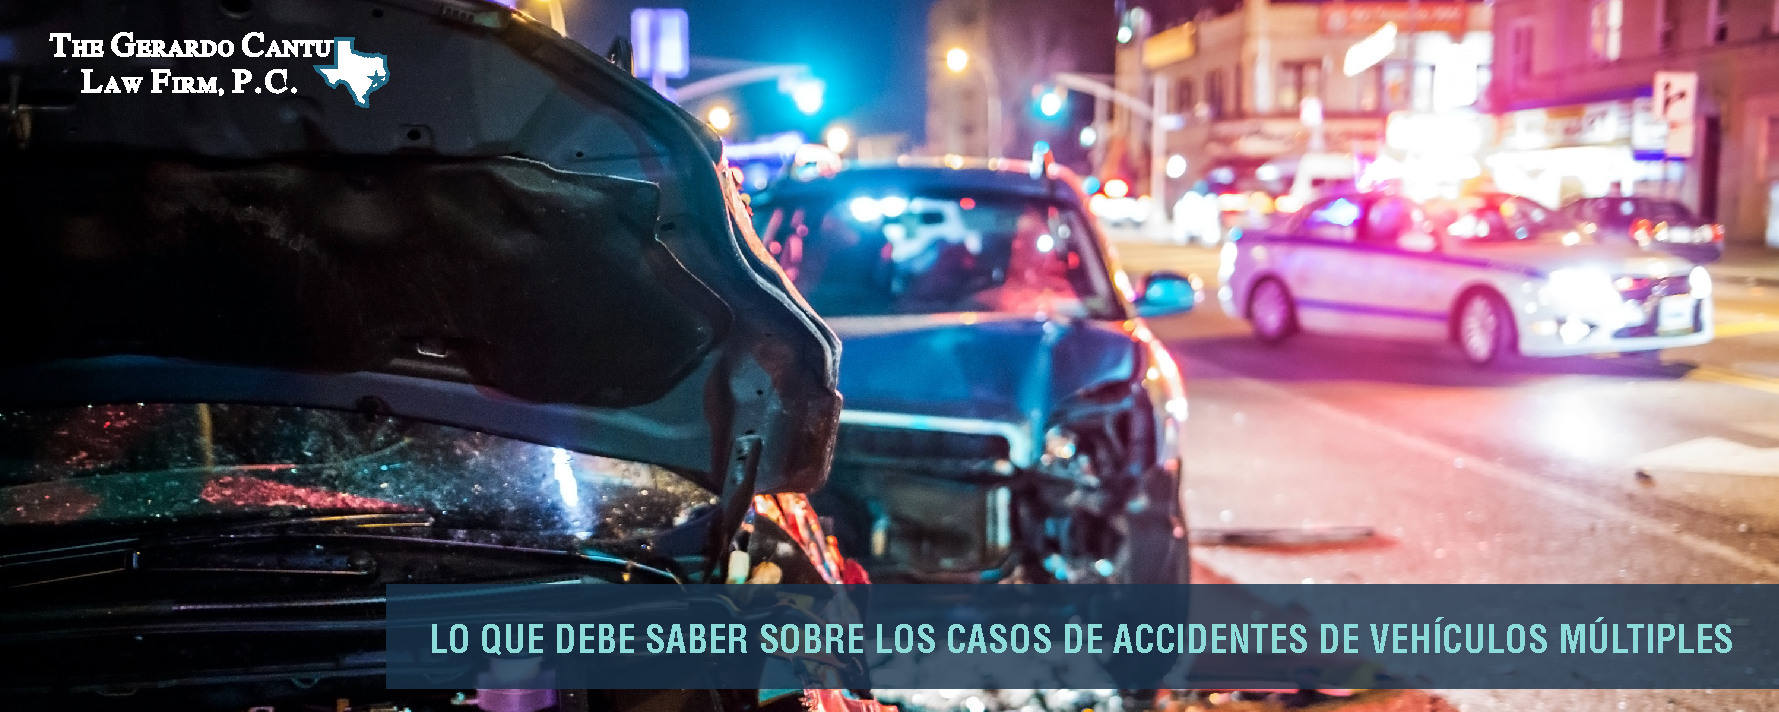 Lo que debe saber sobre los casos de accidentes de vehículos múltiples 